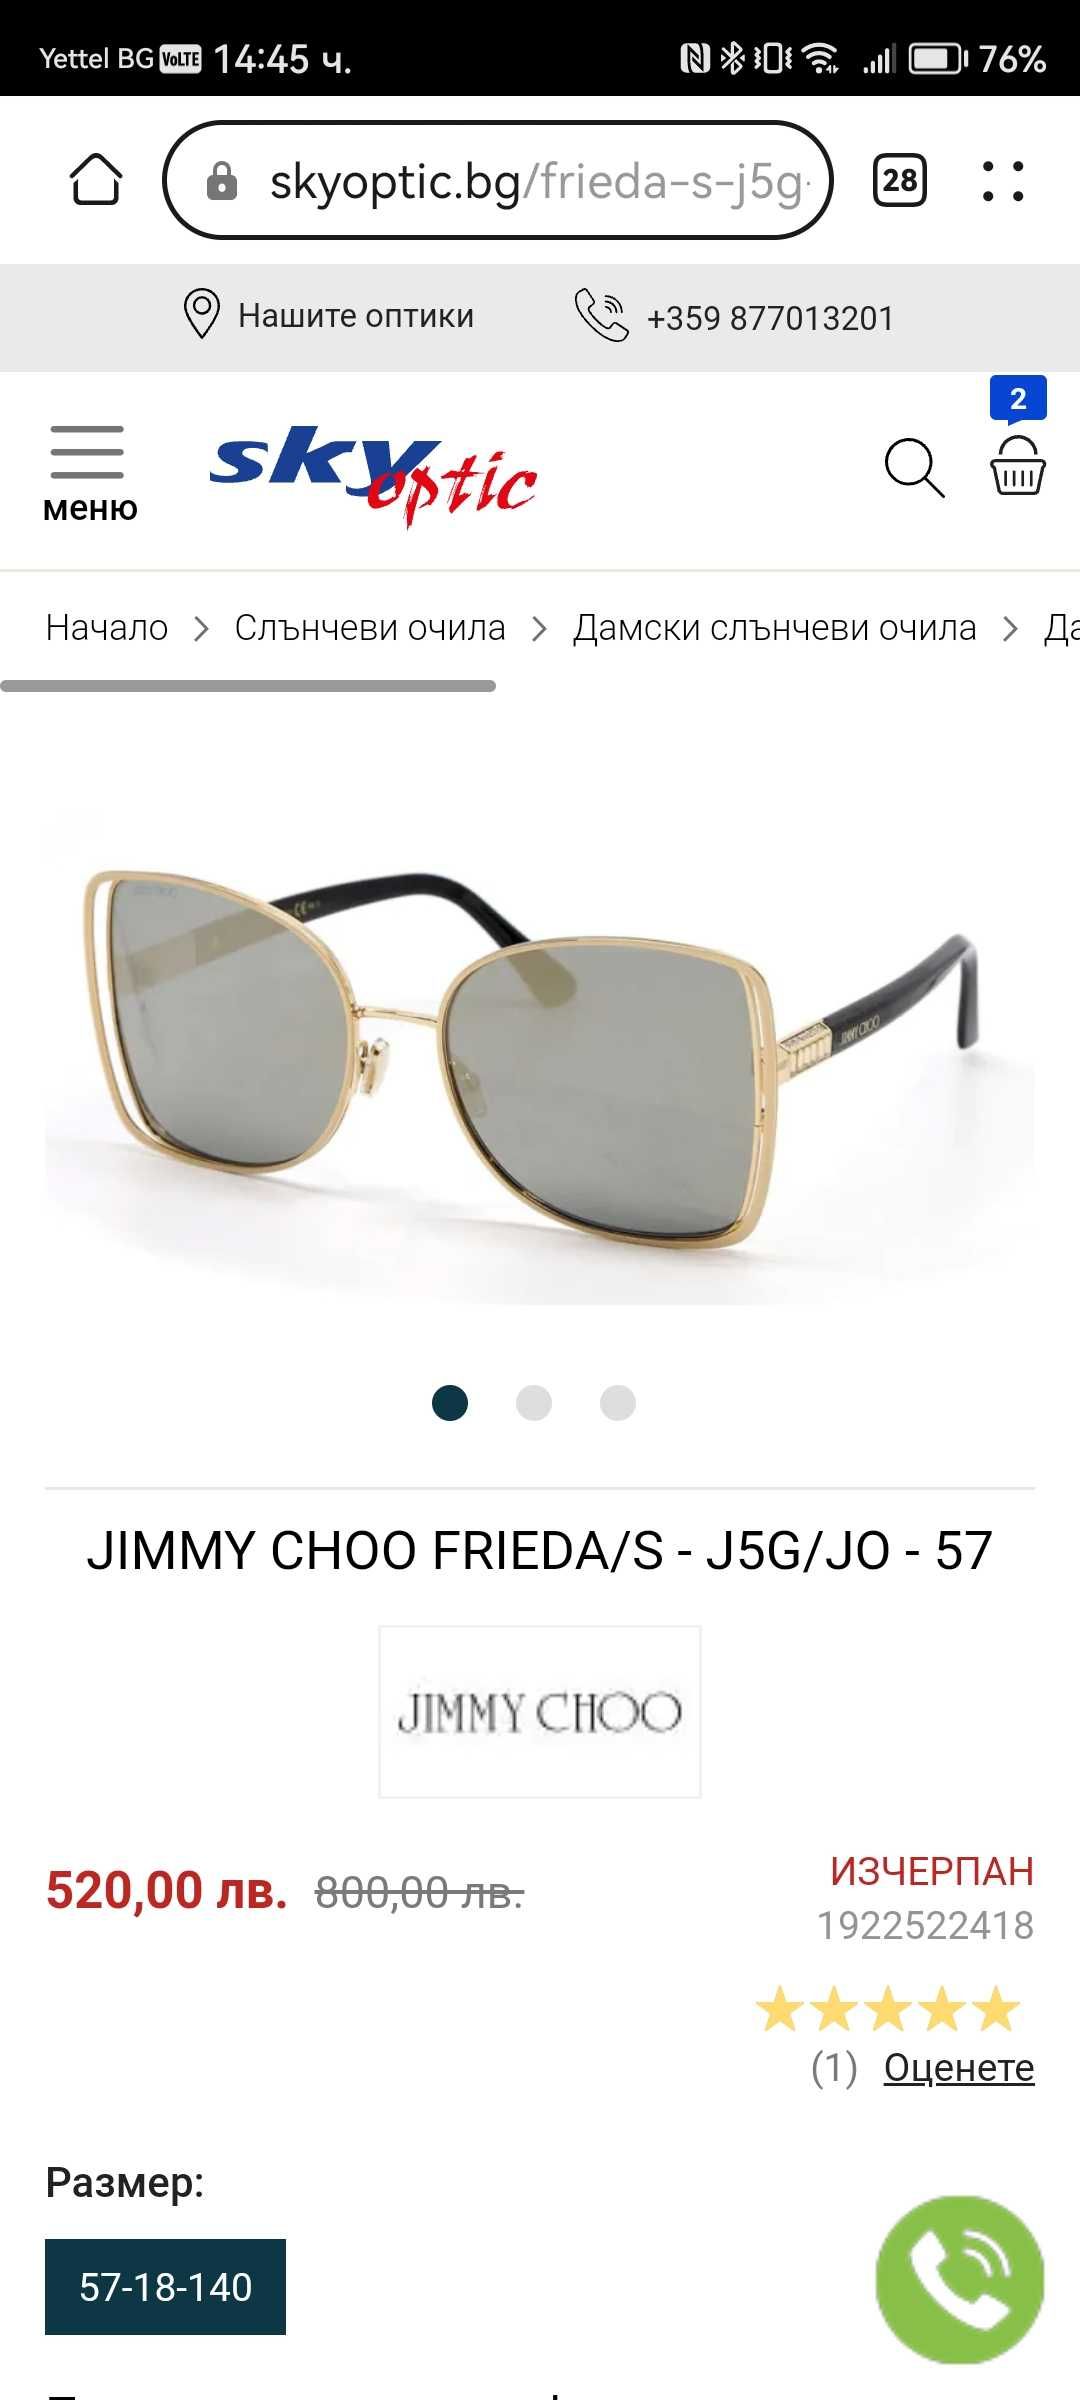 Дамски оригинални очила Jimmy choo